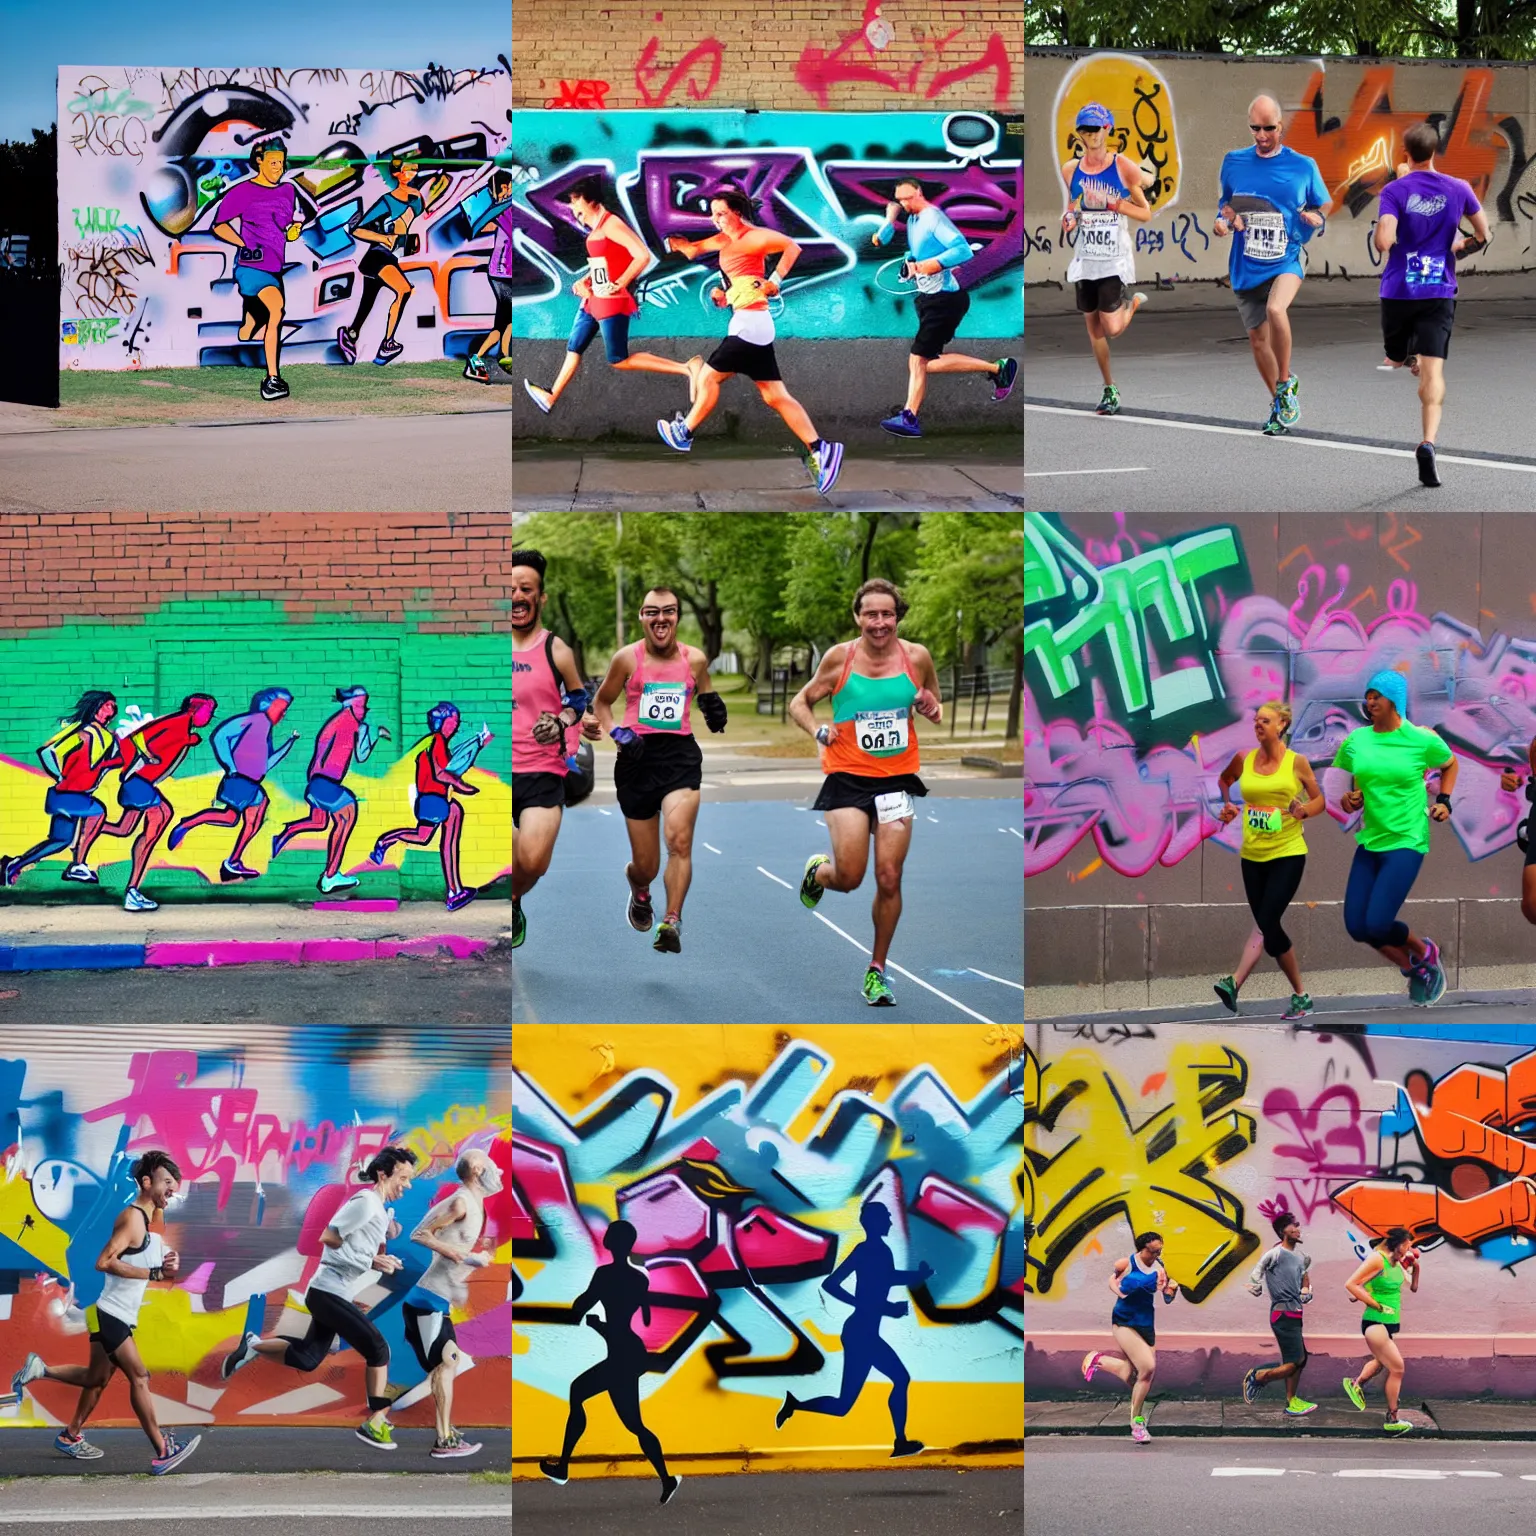 Prompt: a graffiti of three people running a marathon